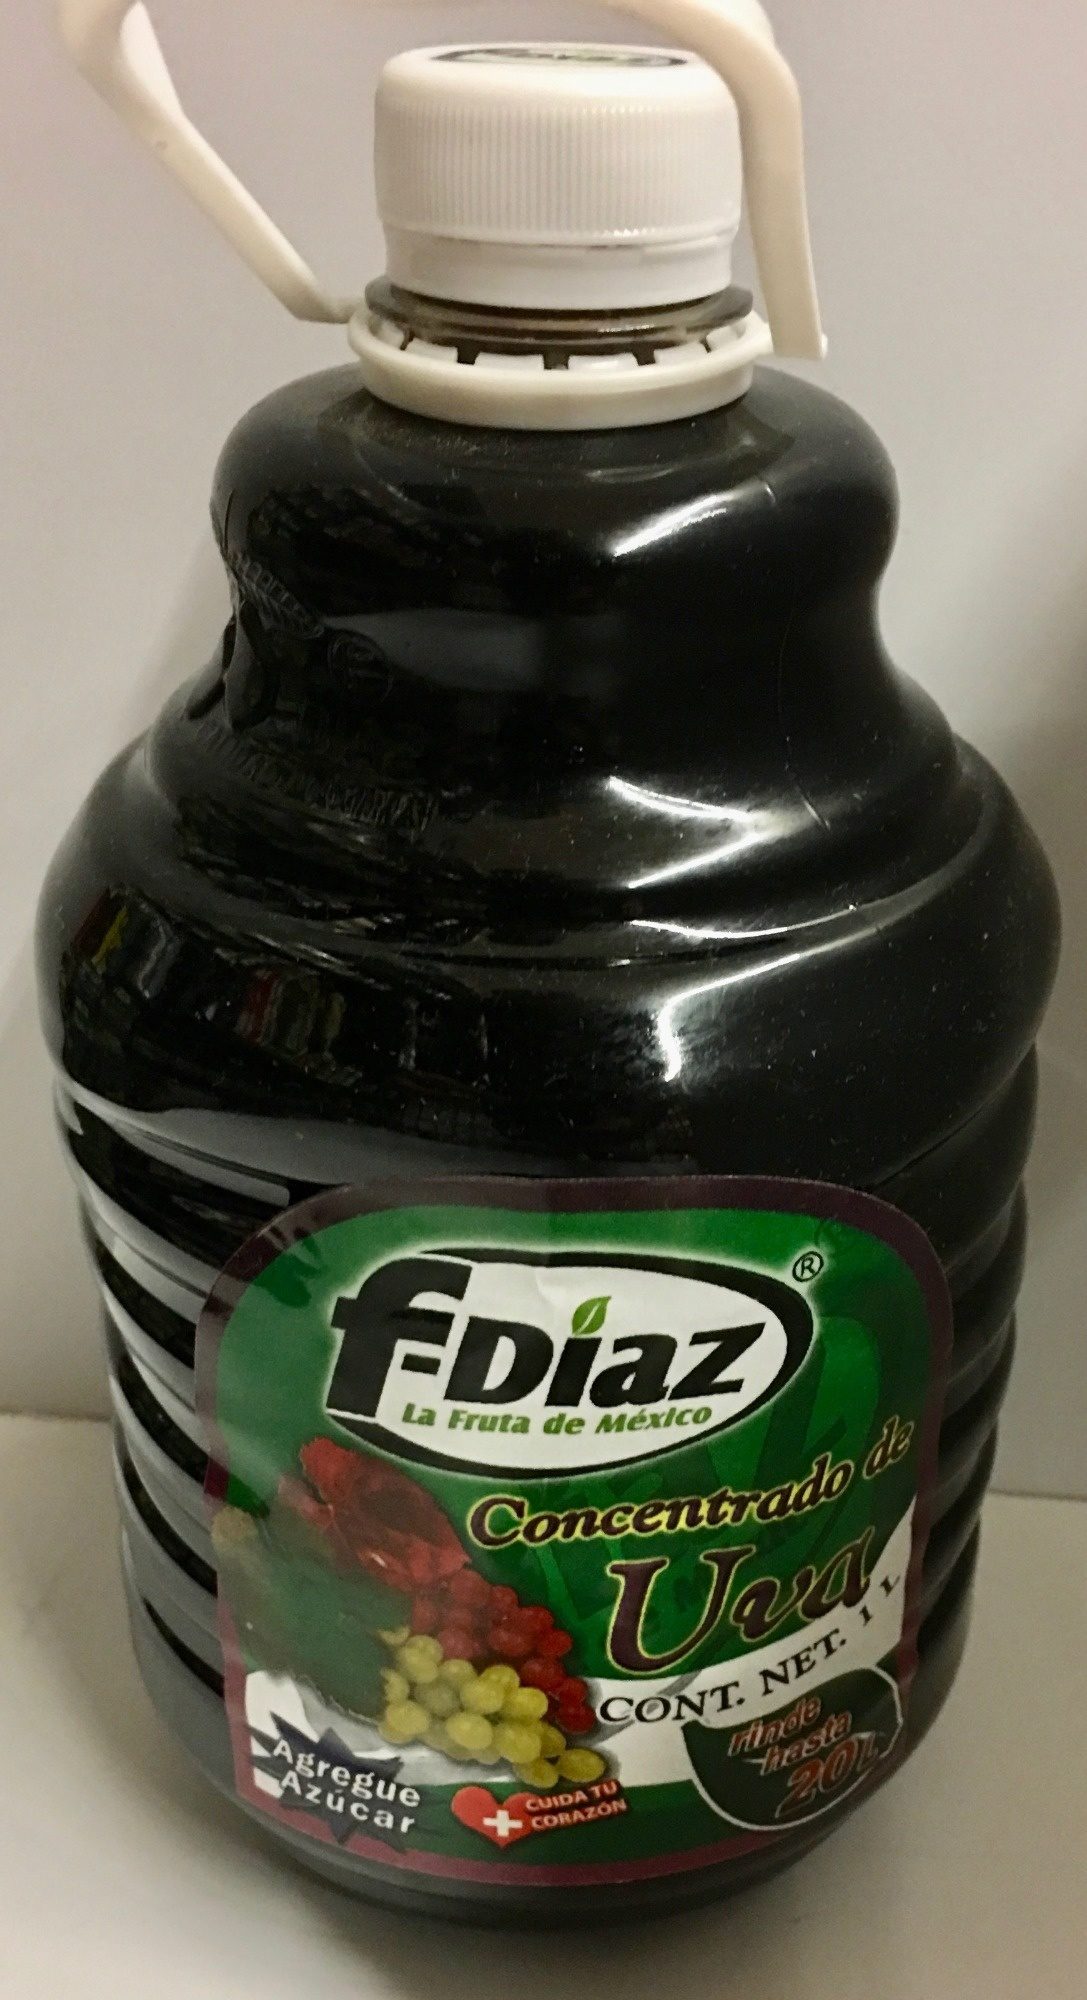 F-DIAZ LA FRUTA DE MÉXICO - Produkt - es